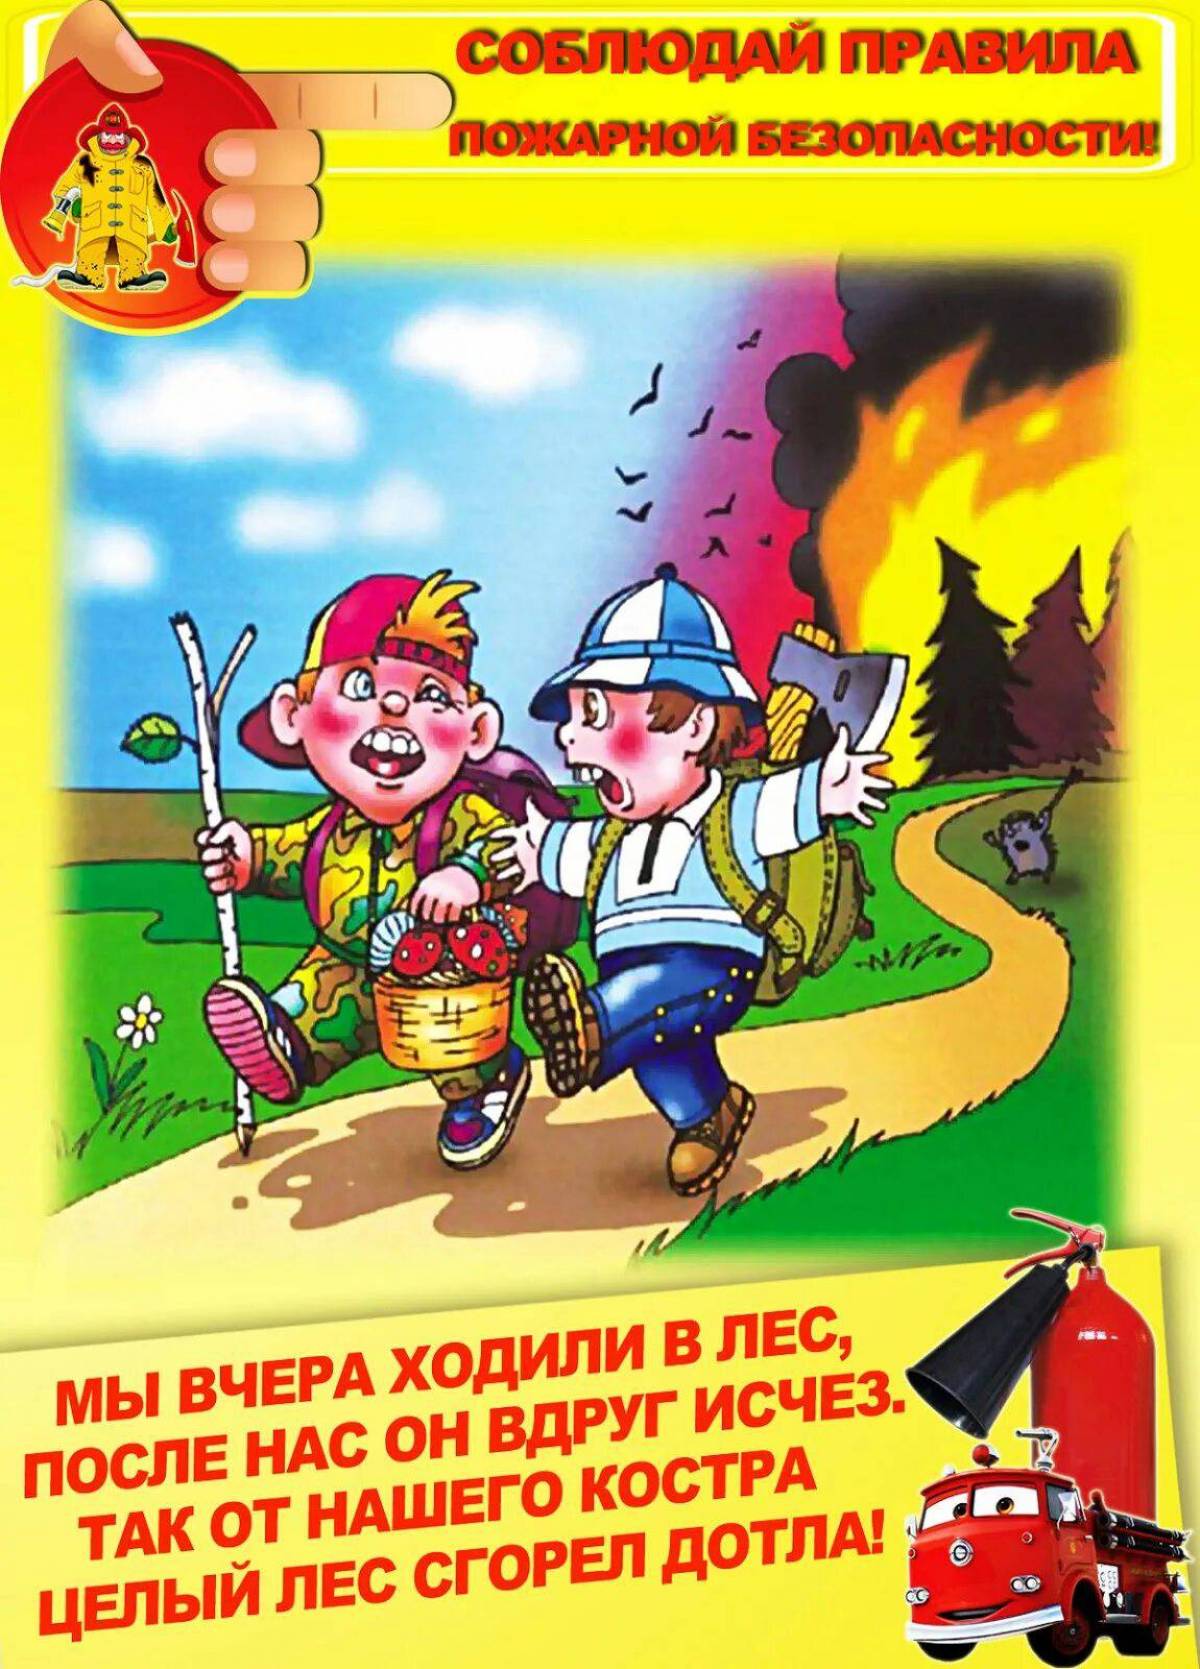 Правила пожарной безопасности для детей #19